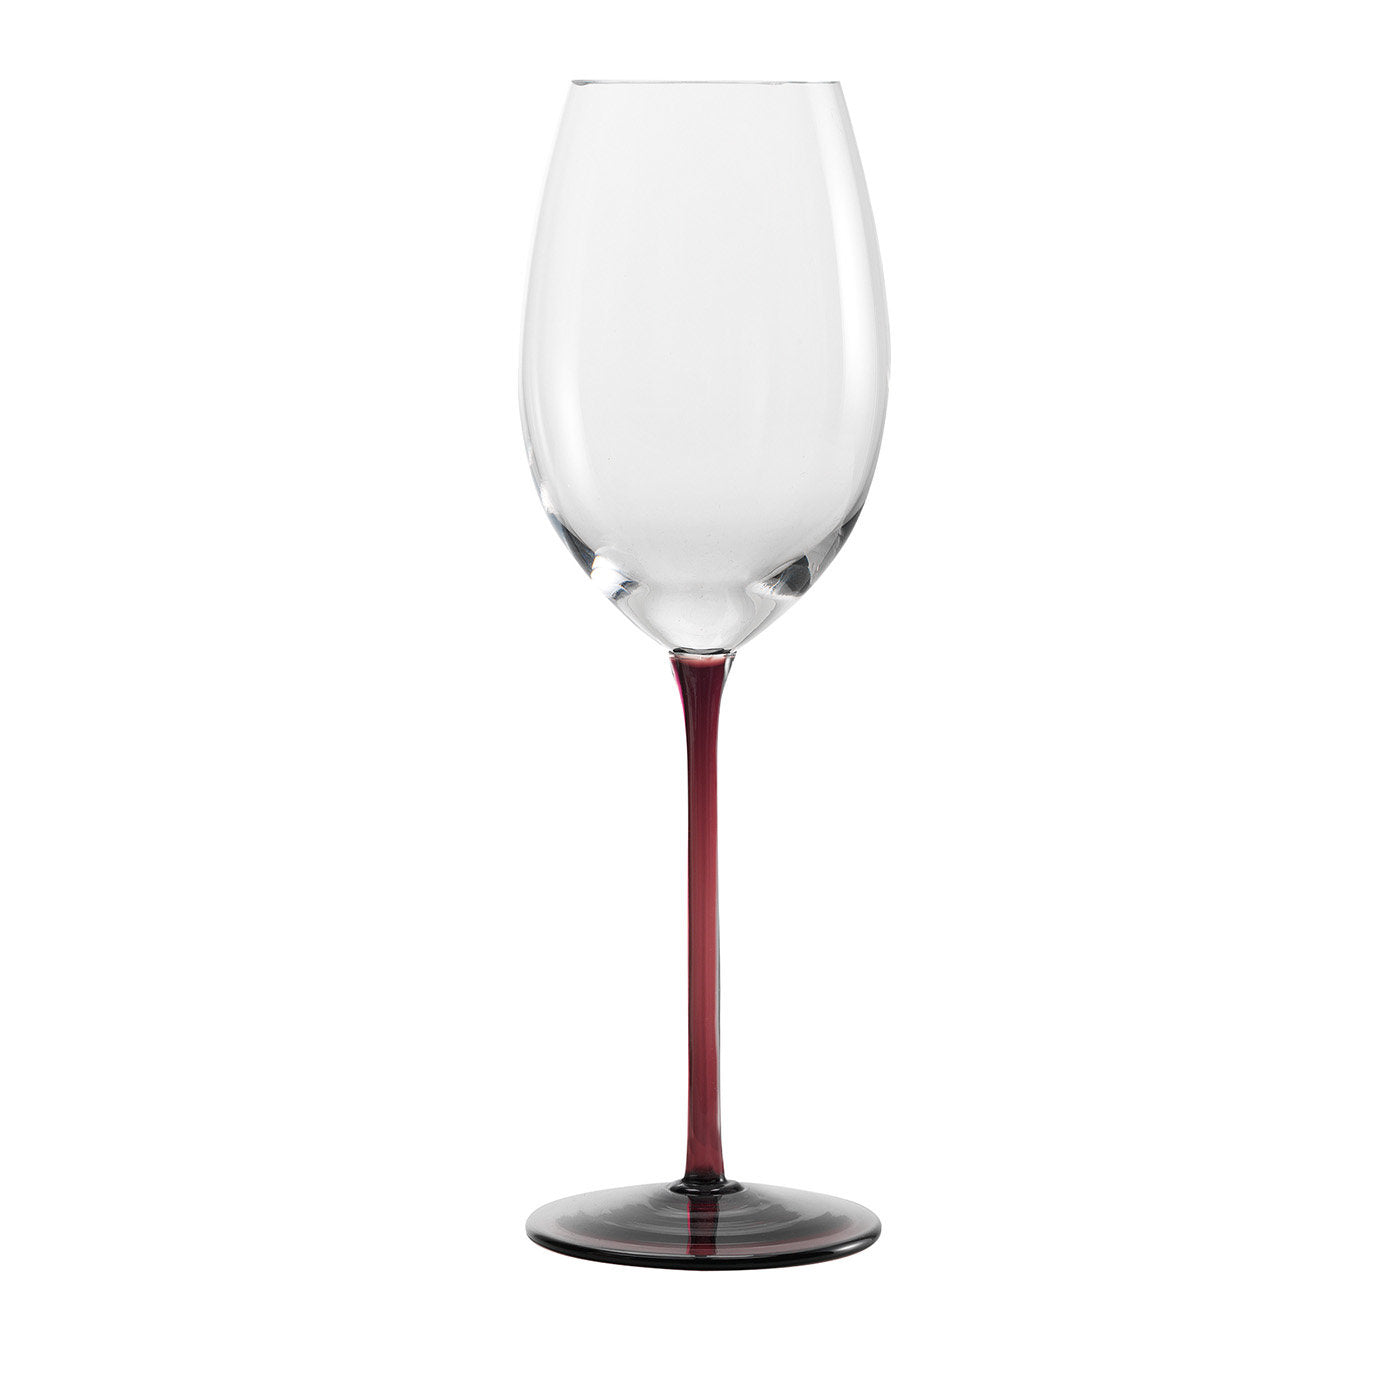 Bicchiere da vino bianco più alto - Vista principale